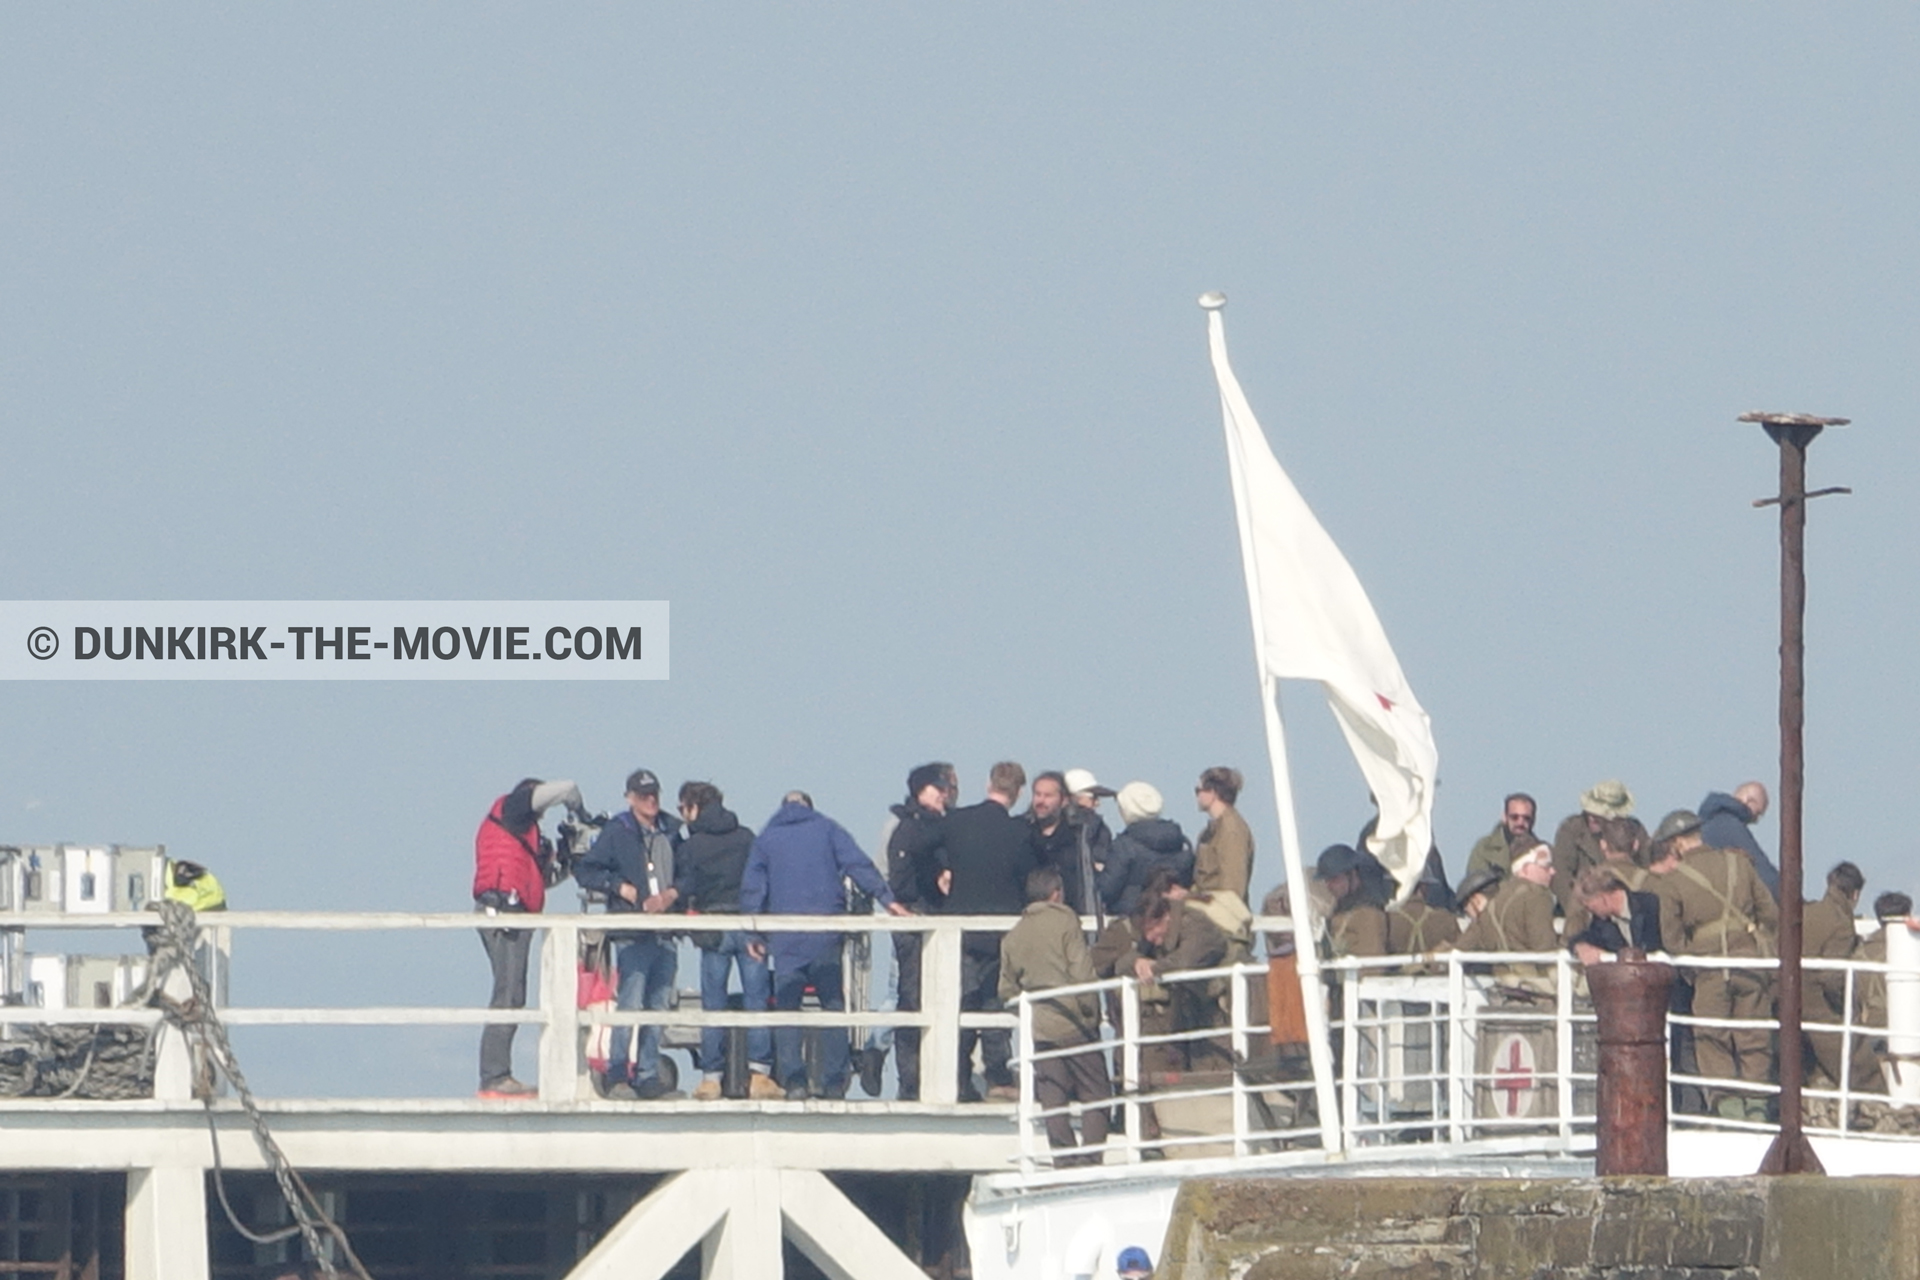 Fotos con extras, Hoyte van Hoytema, muelle del ESTE, Christopher Nolan, equipo técnica, M/S Rogaland,  durante el rodaje de la película Dunkerque de Nolan